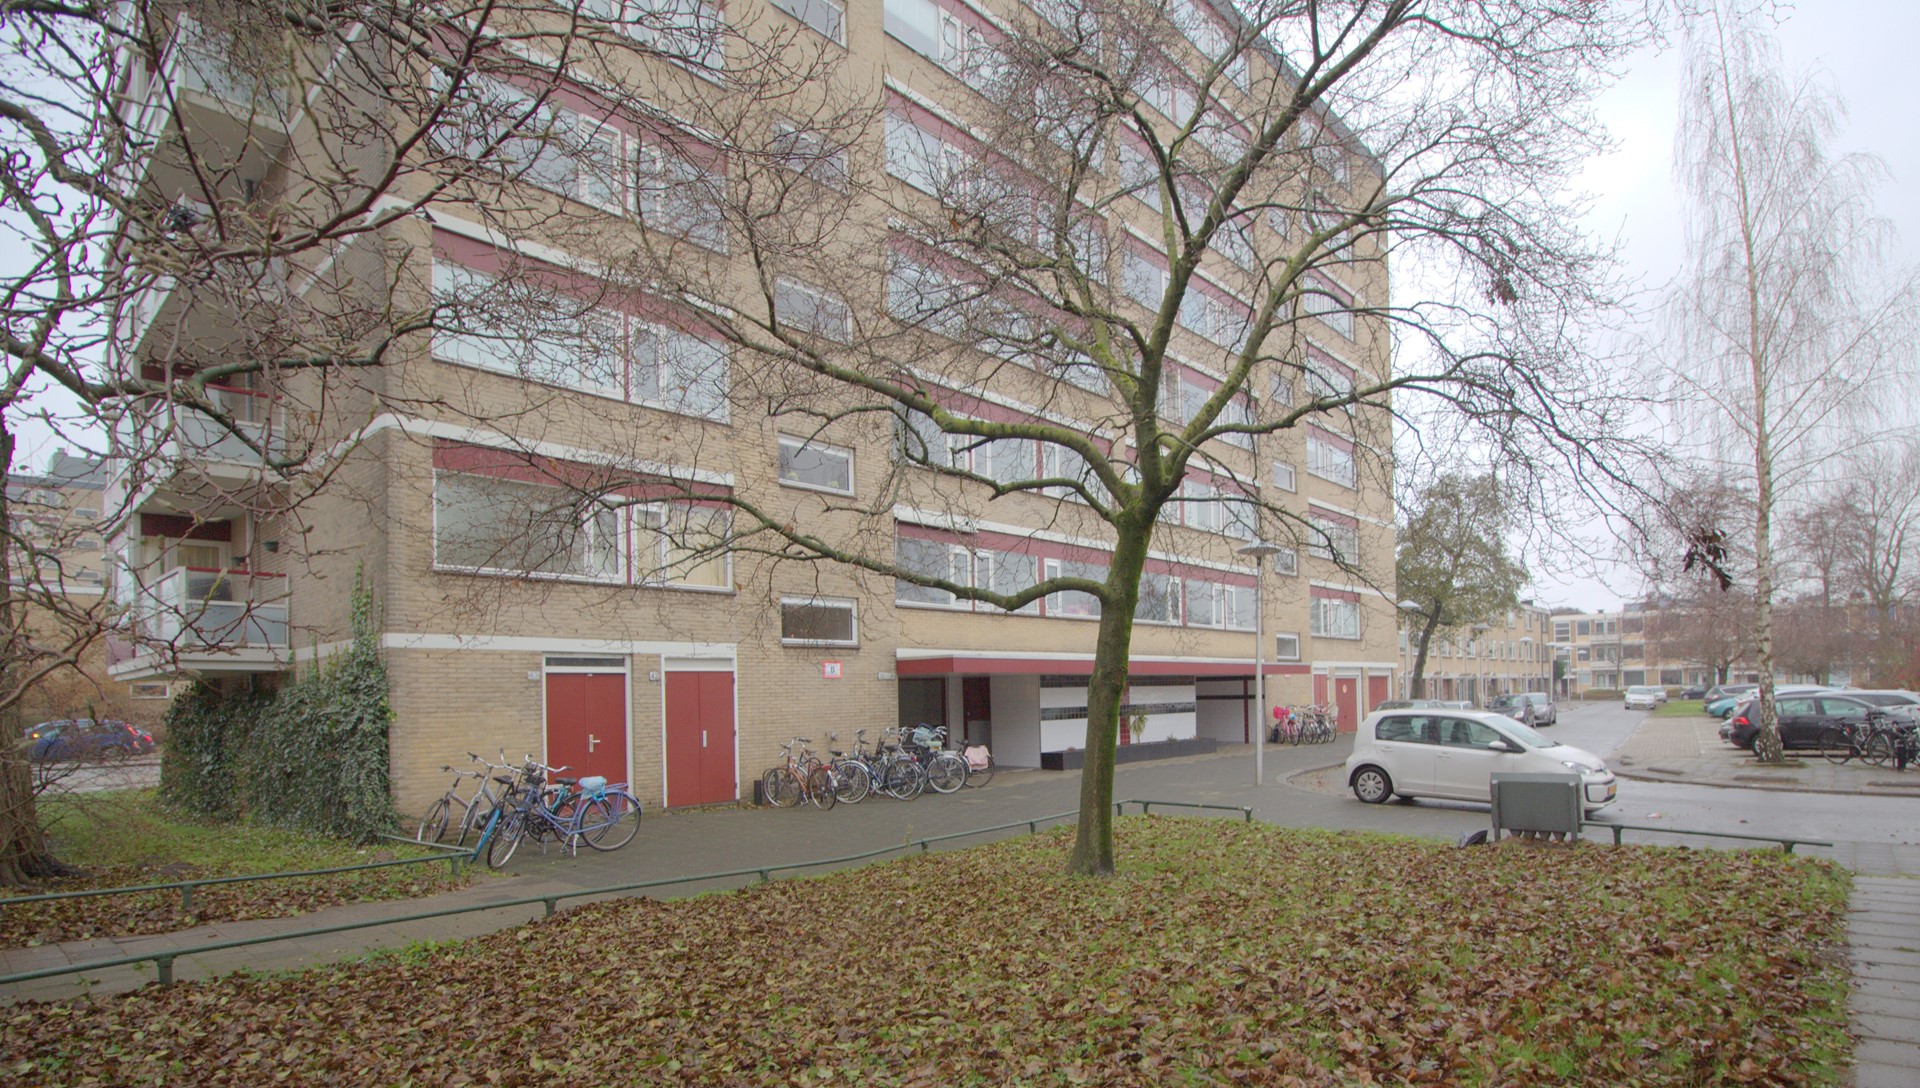 Bekijk foto 1/52 van apartment in Utrecht